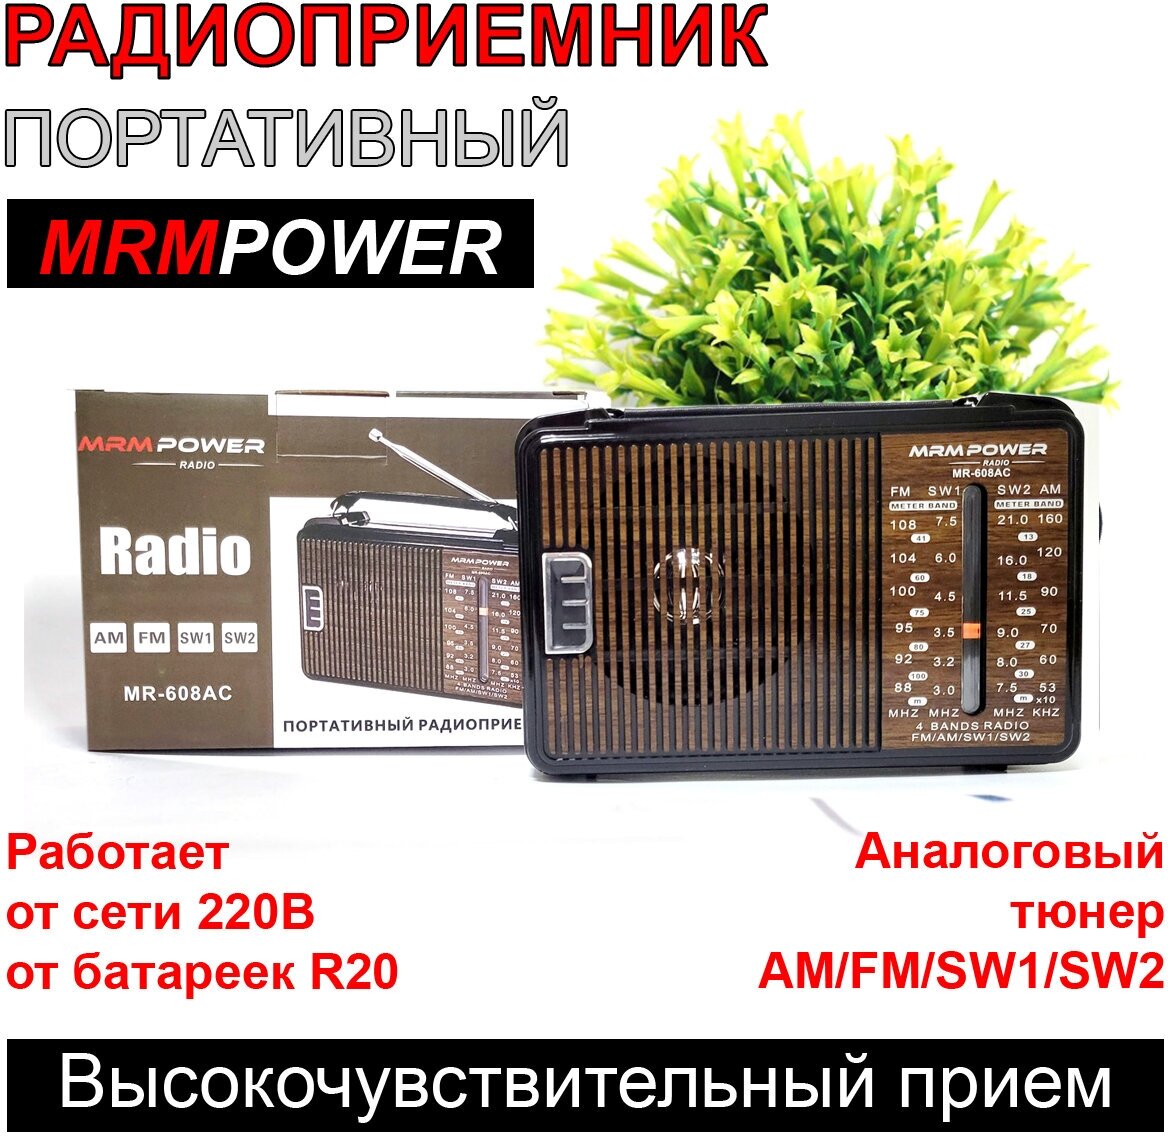 Портативный радиоприемник с аналоговым тюнером. Радиоприемник от сети и батареек.